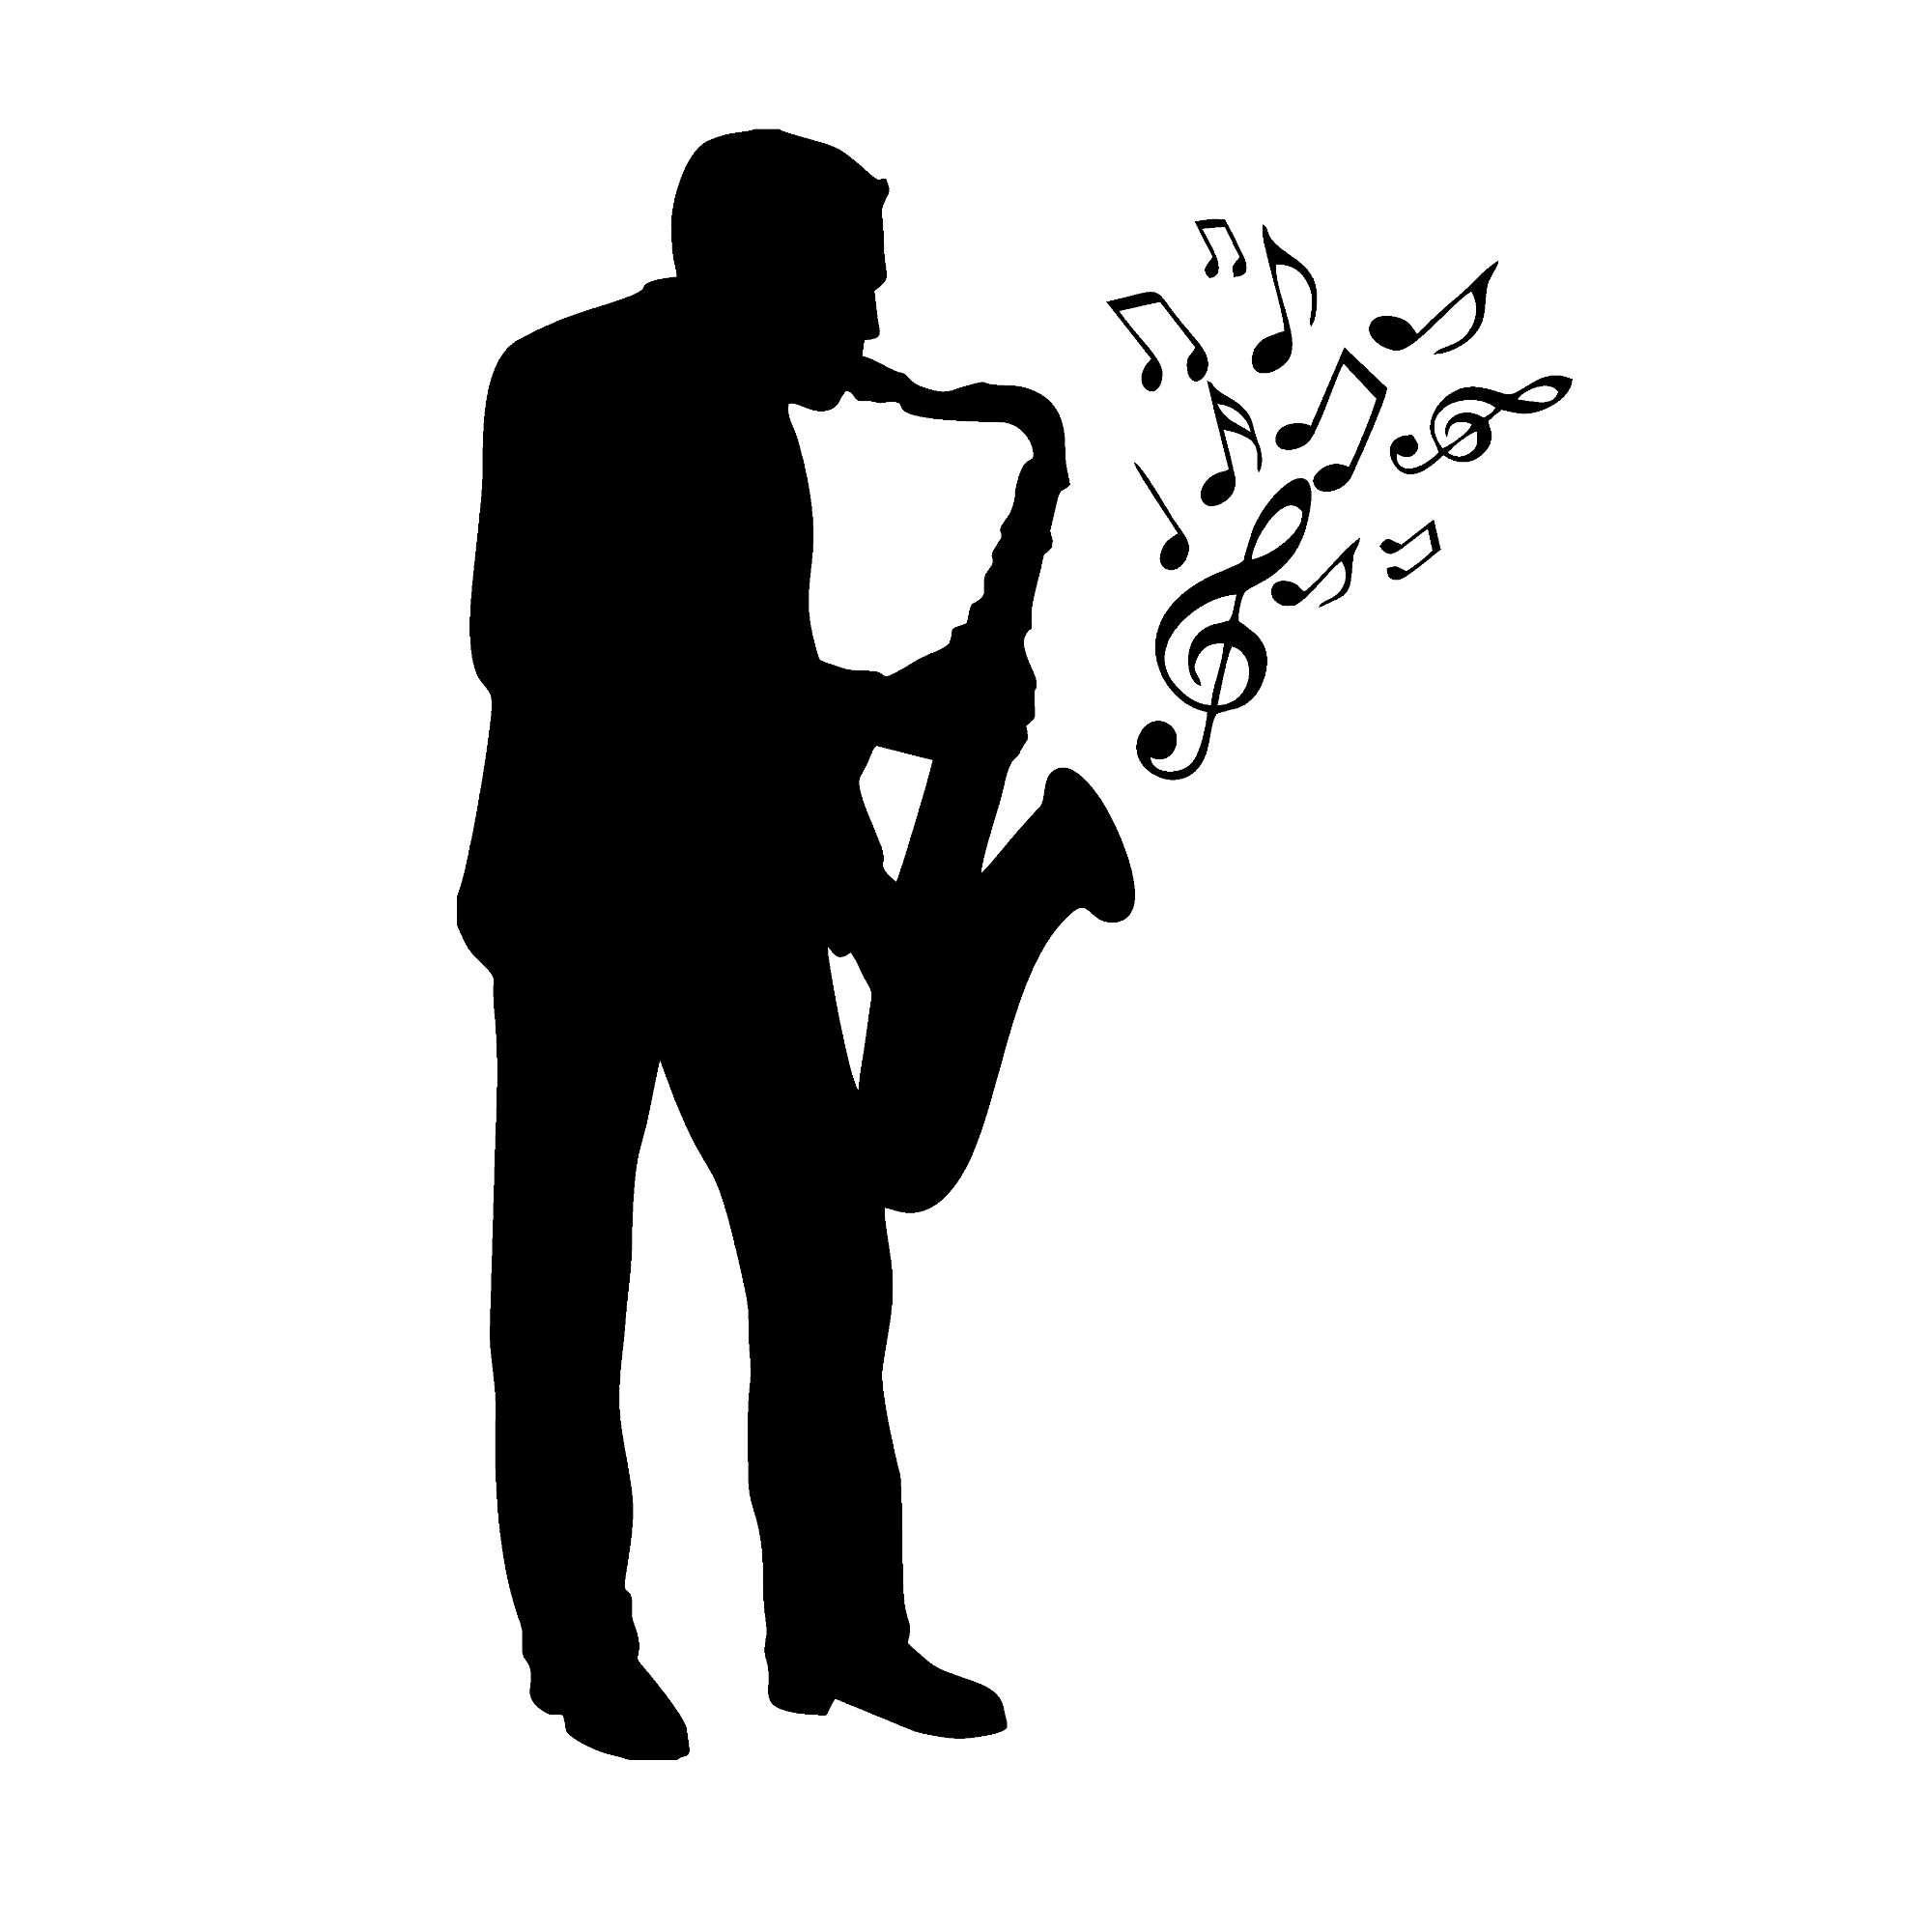 Saxophon mit Noten